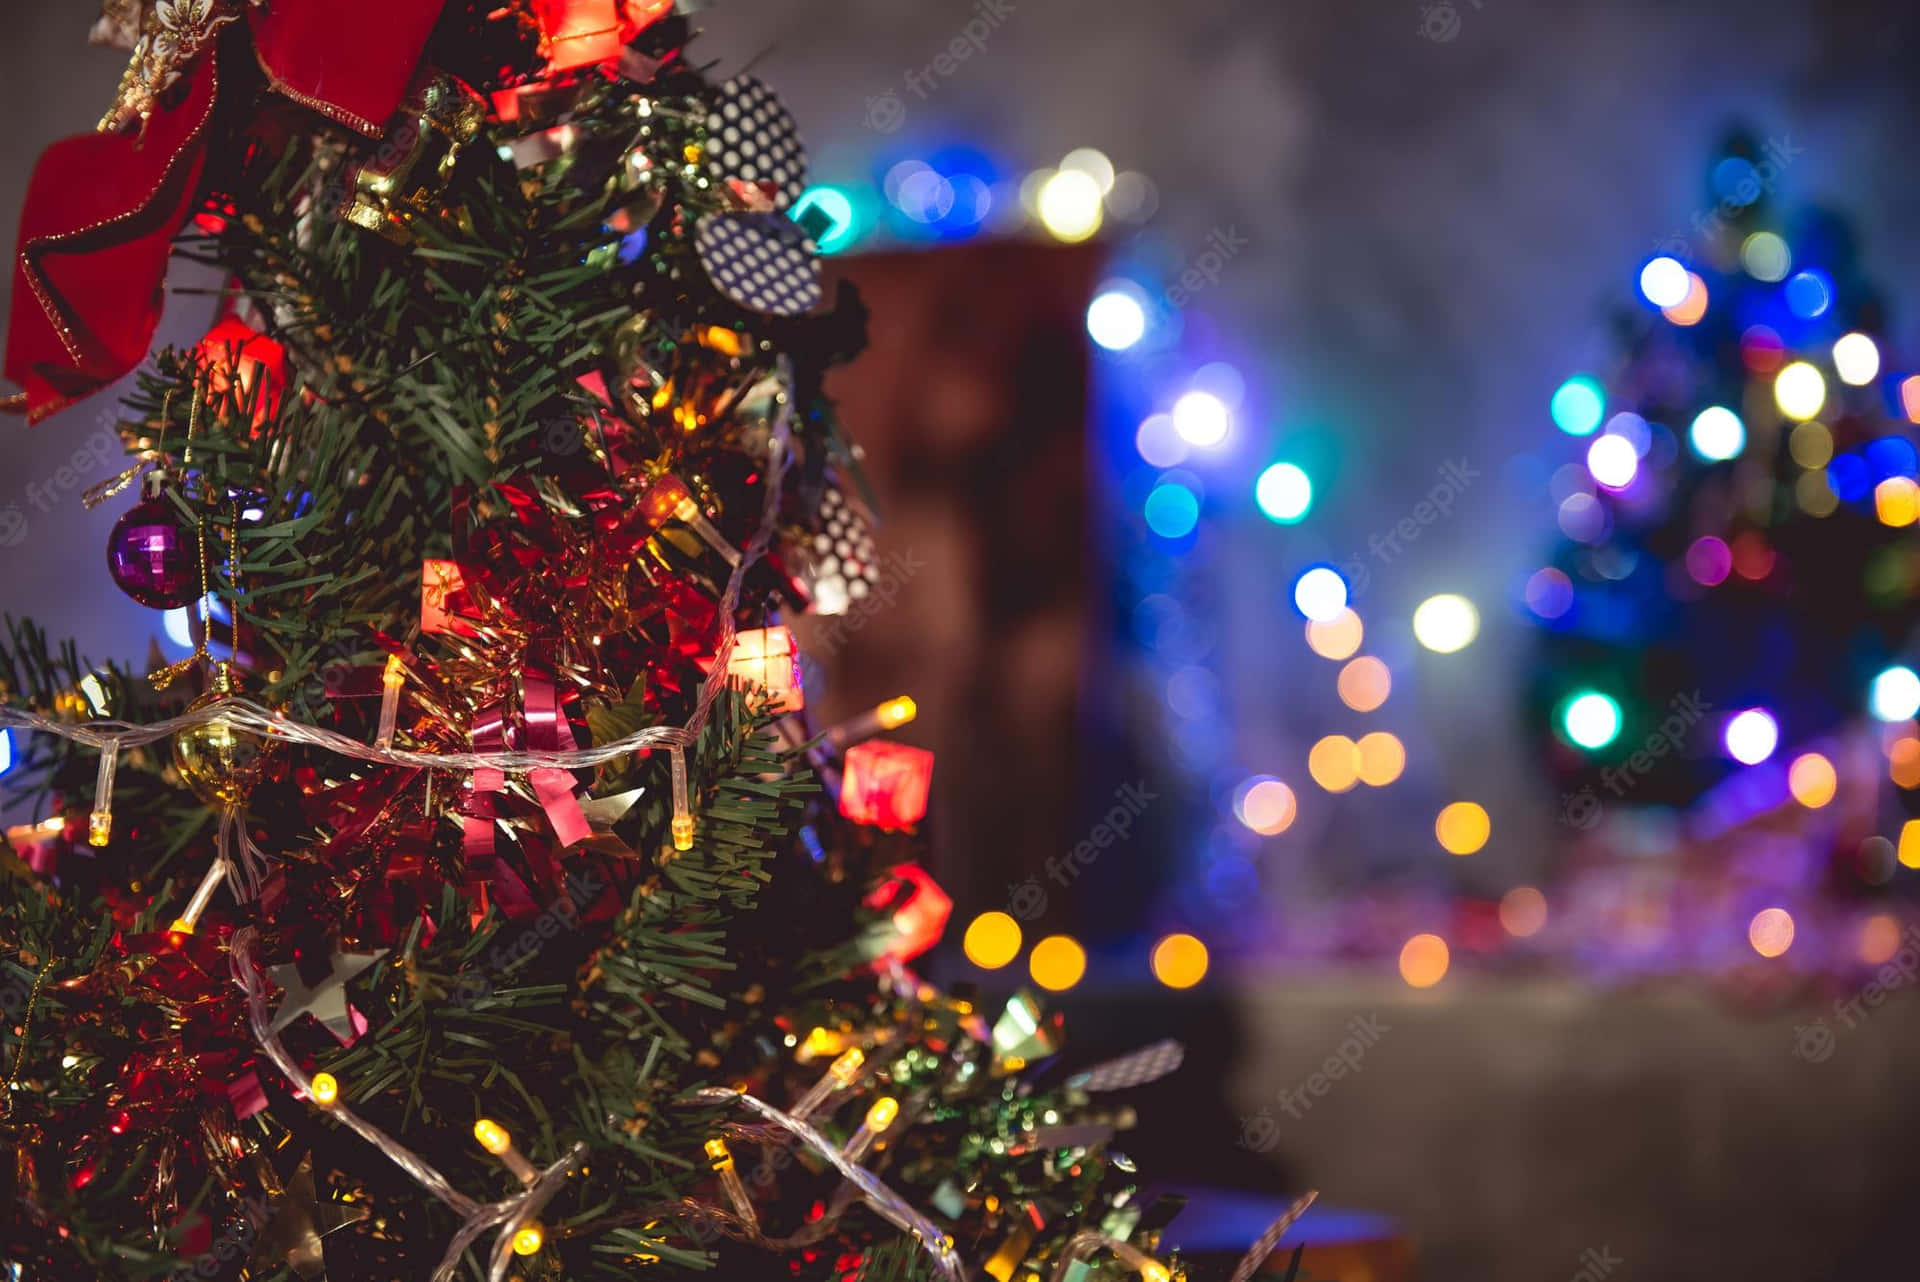 Kom i julehumør med disse søde julelys tumblr dekorationer! Wallpaper